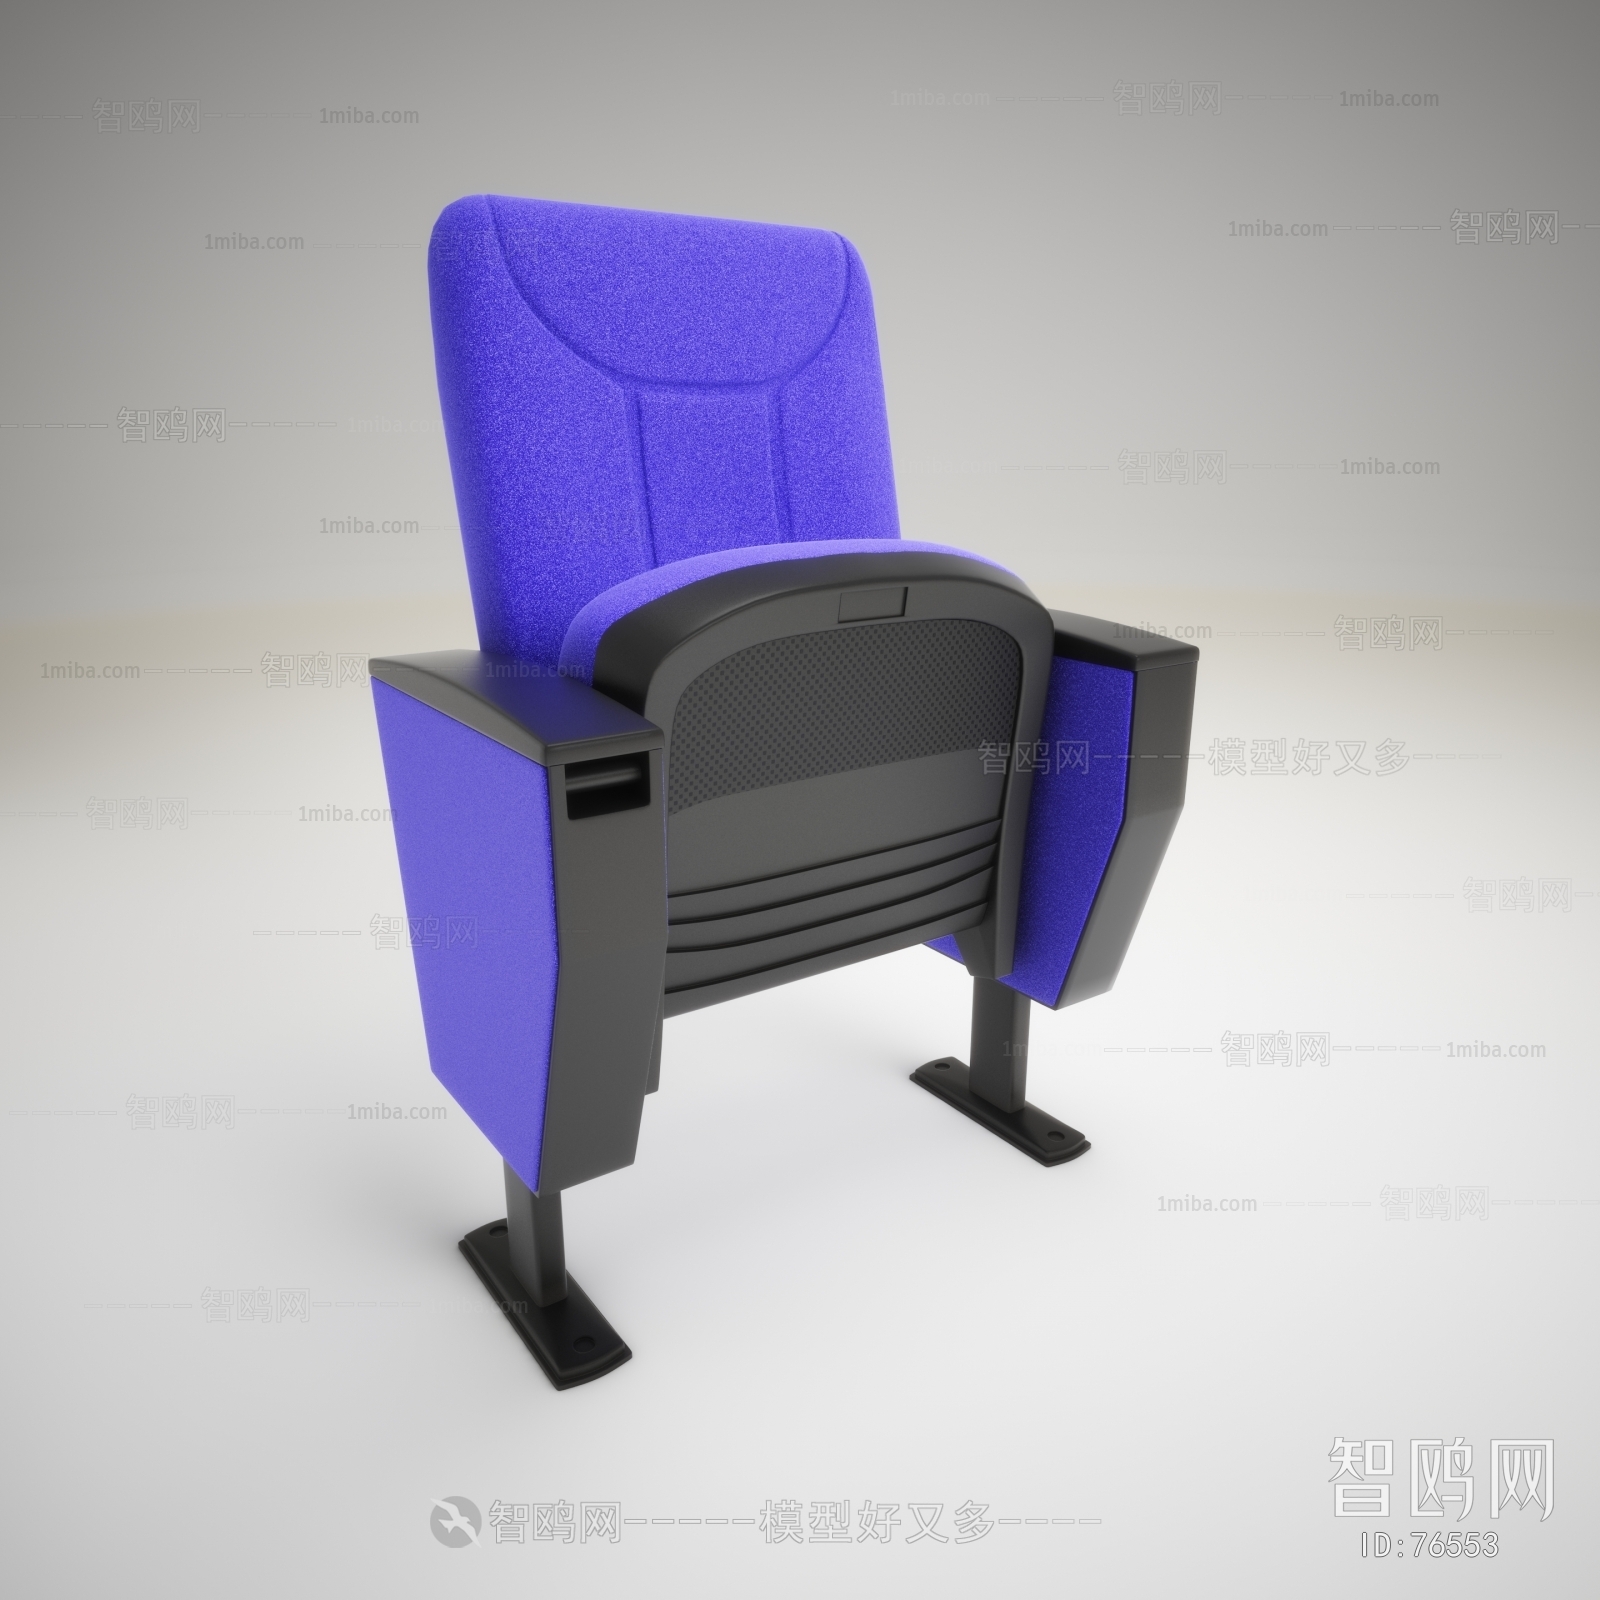 Modern Communal Chair